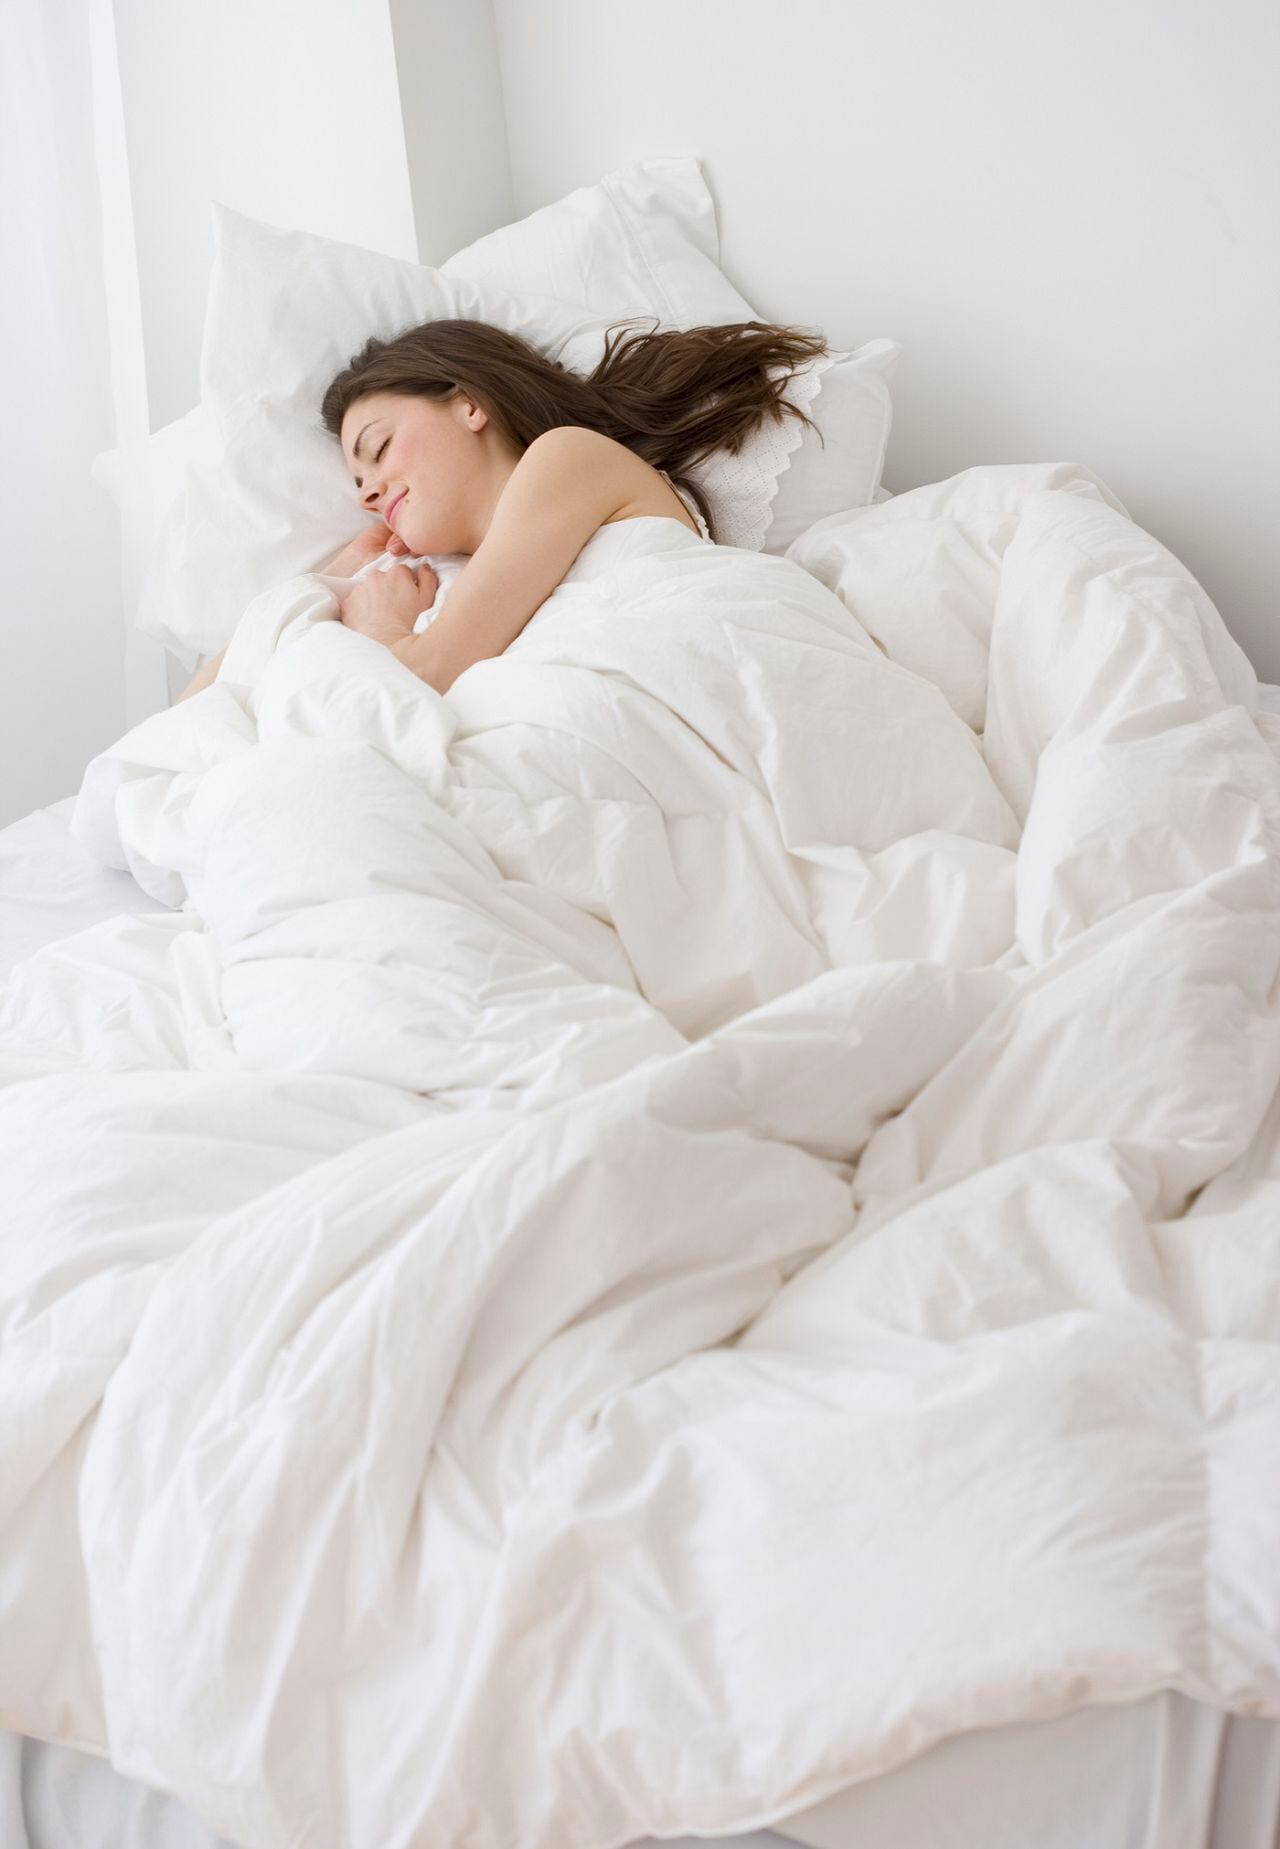 Dormir bien: más allá de la noche - Mejor con Salud